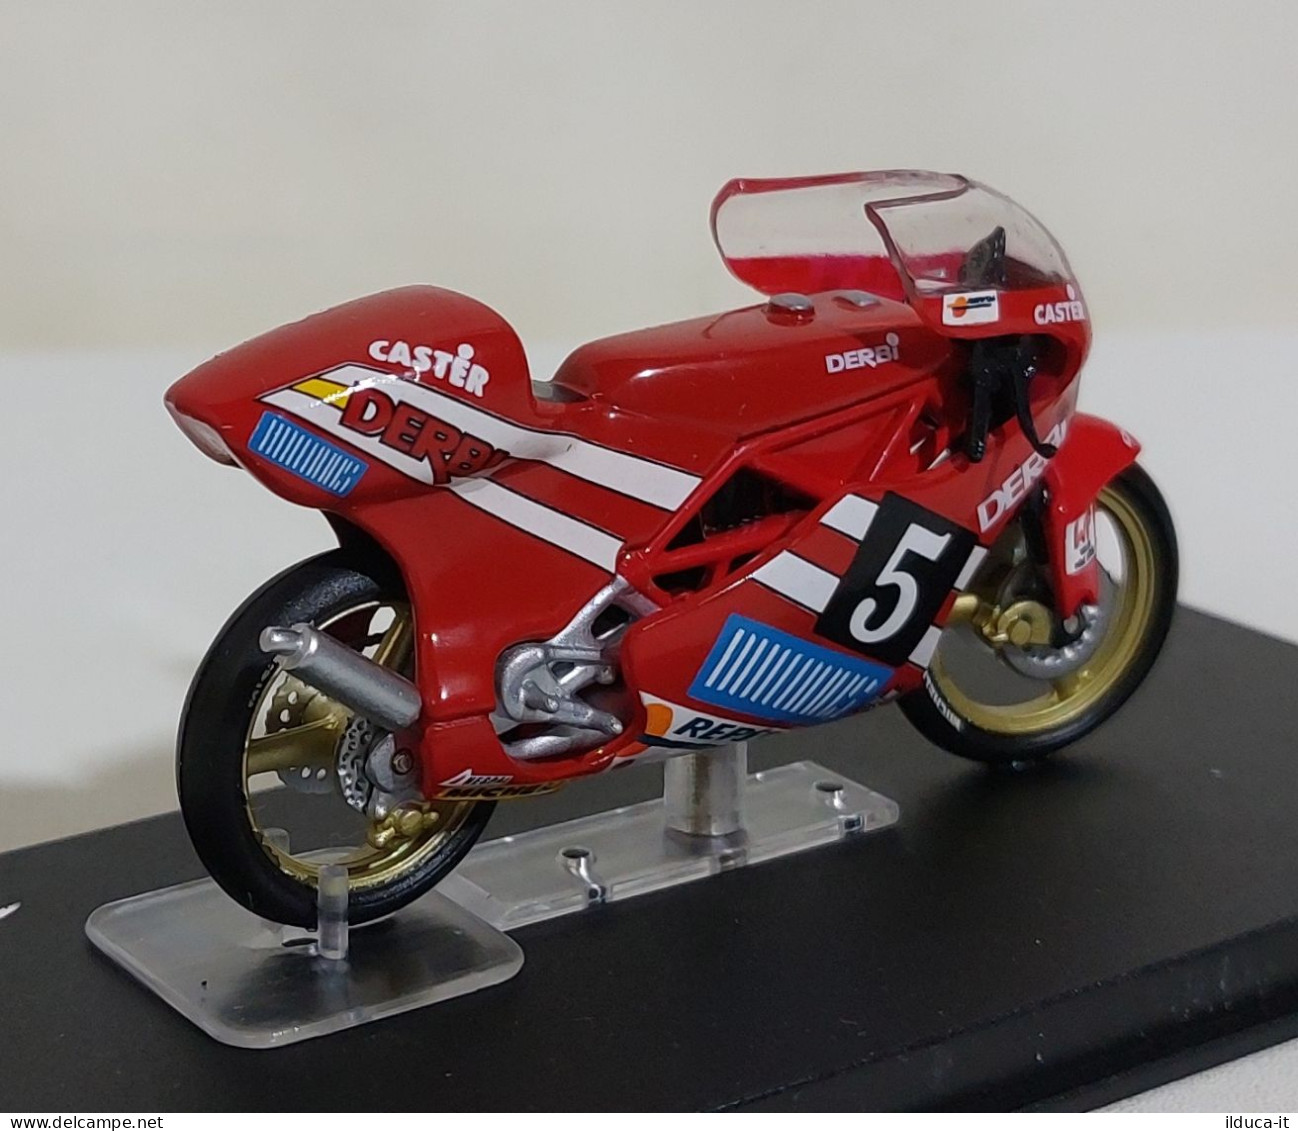 71400 De Agostini Moto 1:24 - Derbi 125GP Jorge Martinez Aspar 1988 - Motos